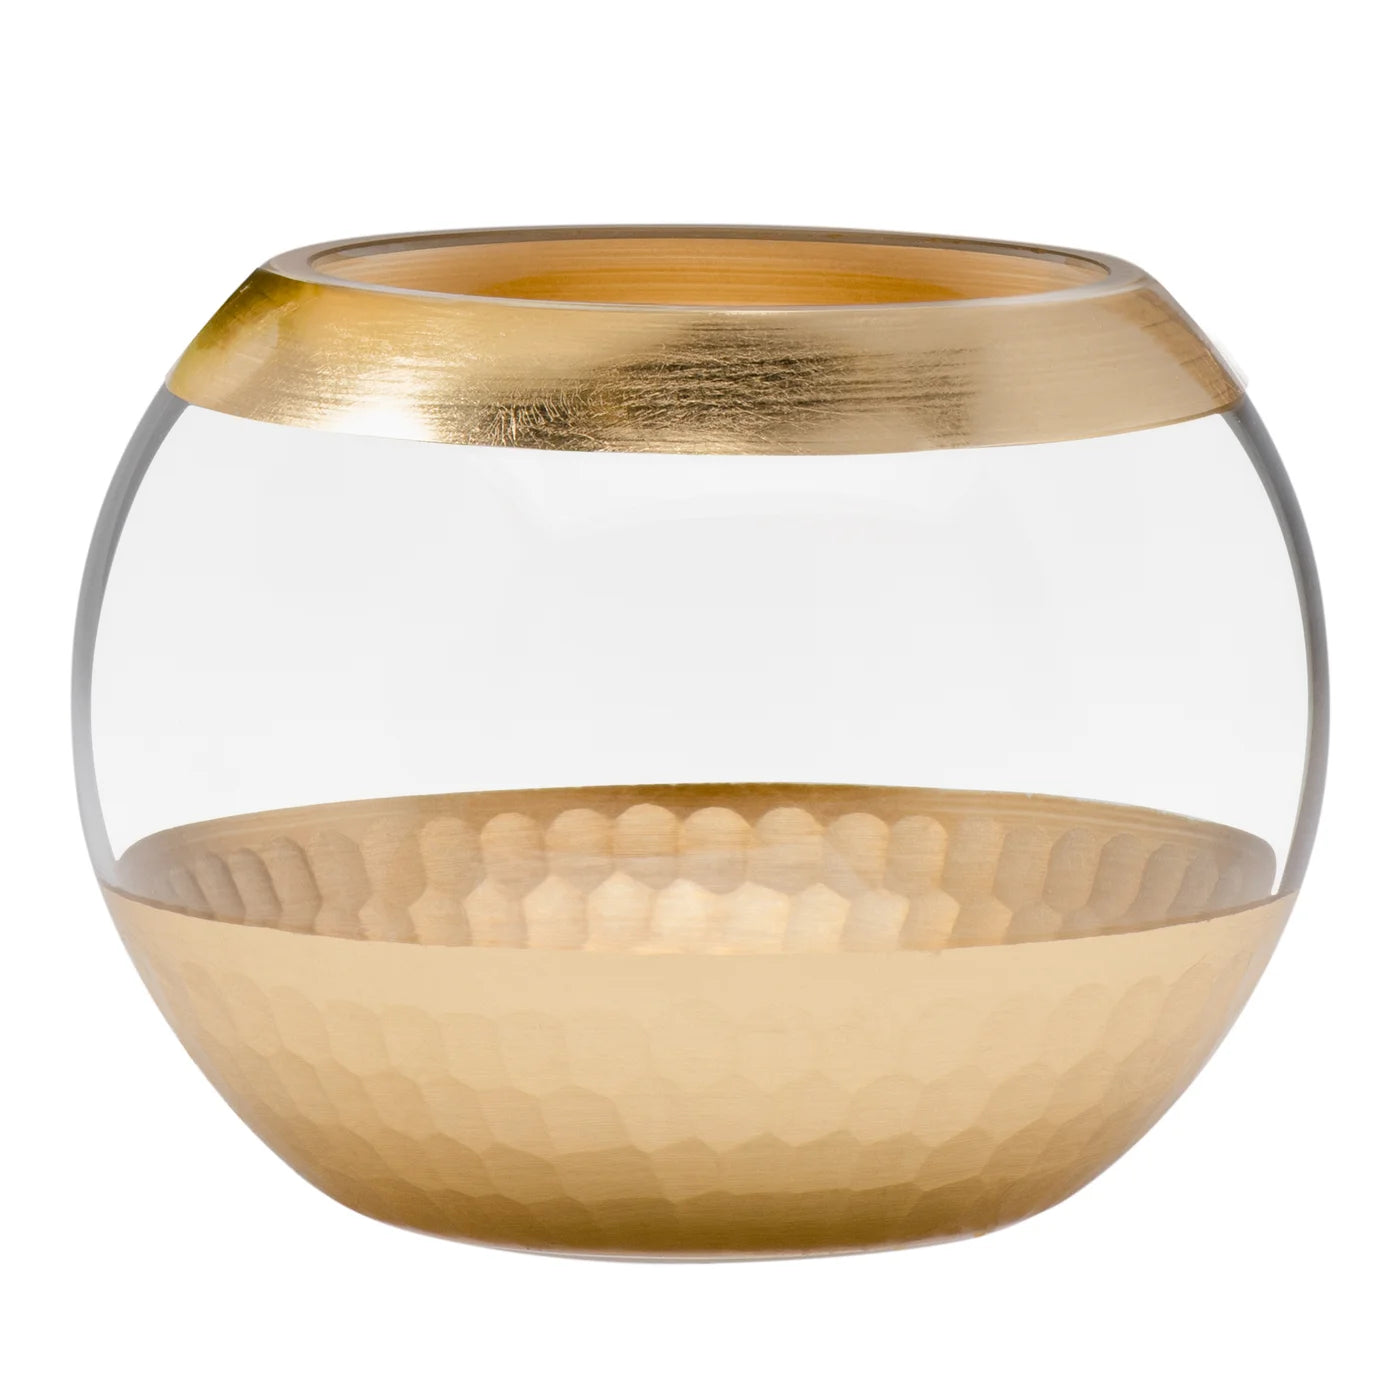 Vase - Gold Trim Facet Cut Glass